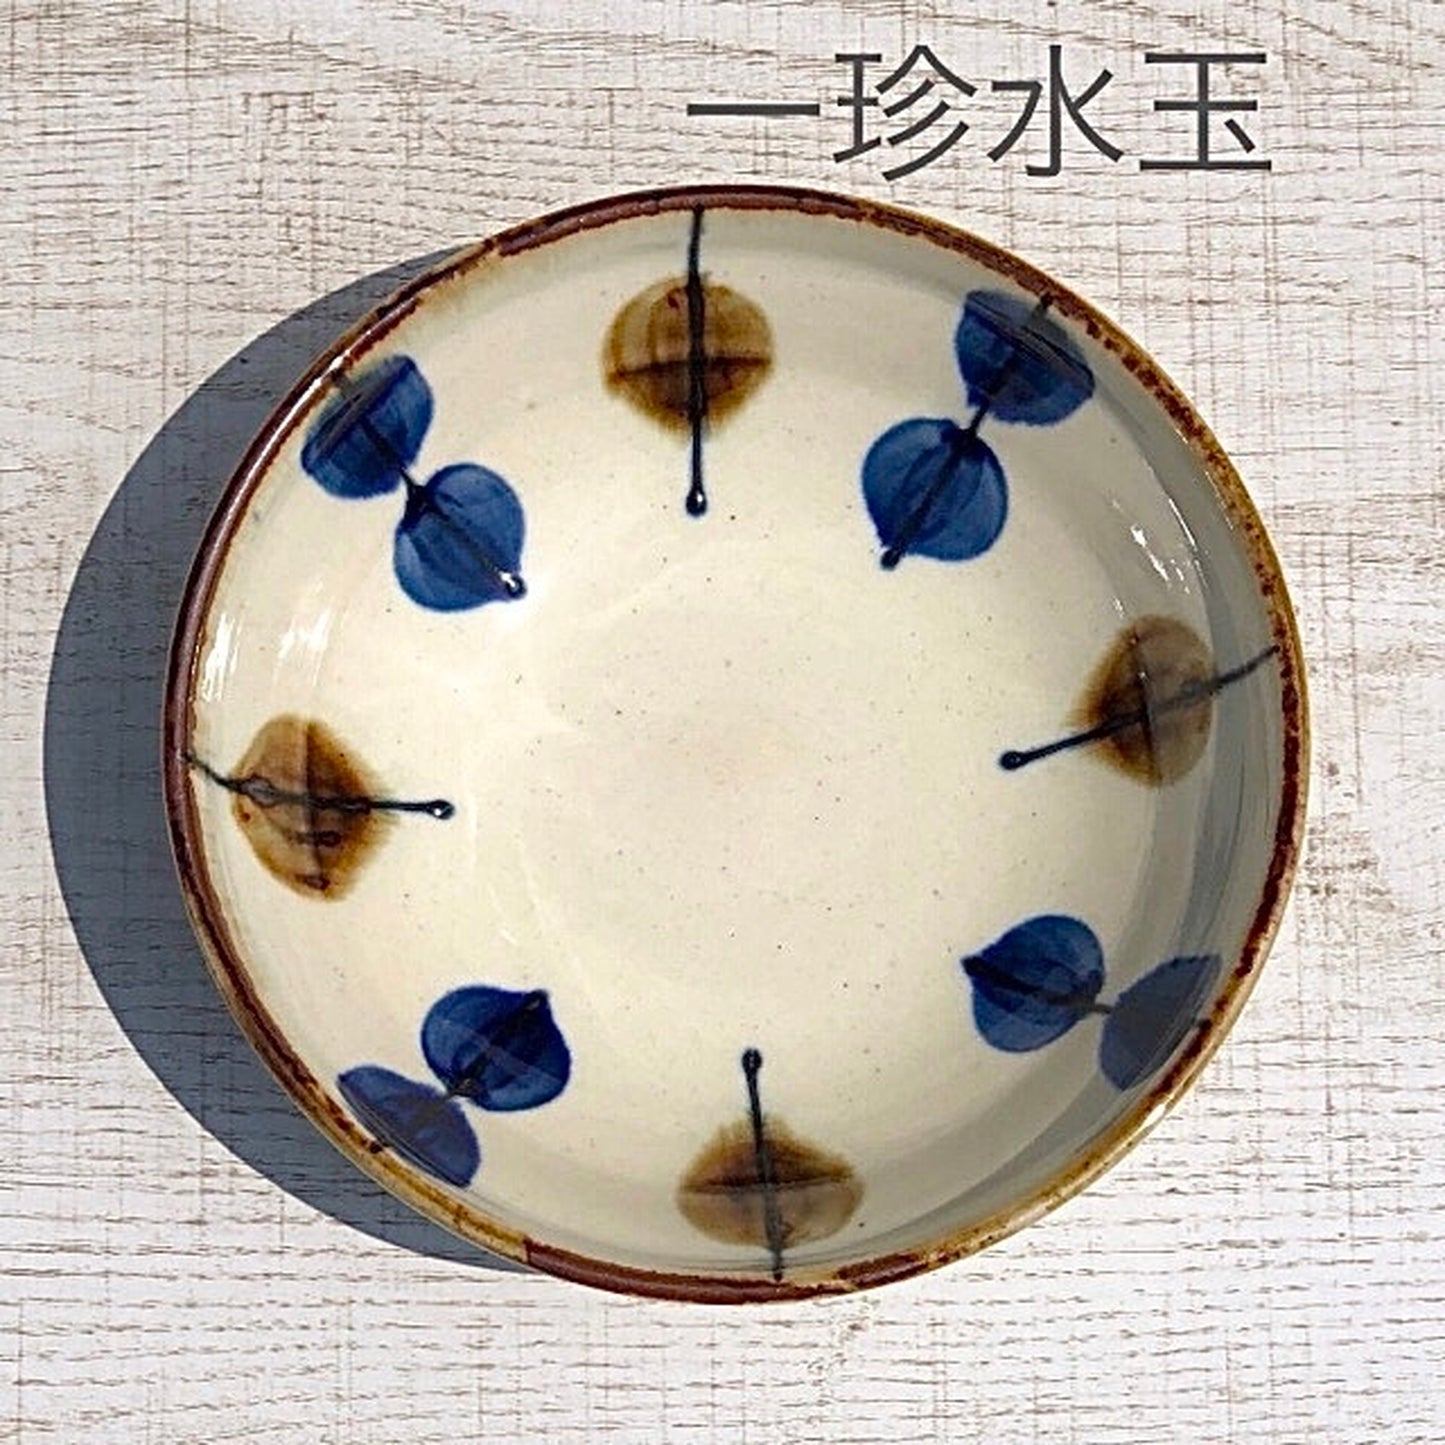 [波佐见烧] [蓝染窑] [靛蓝] [碗] 波佐见烧碗